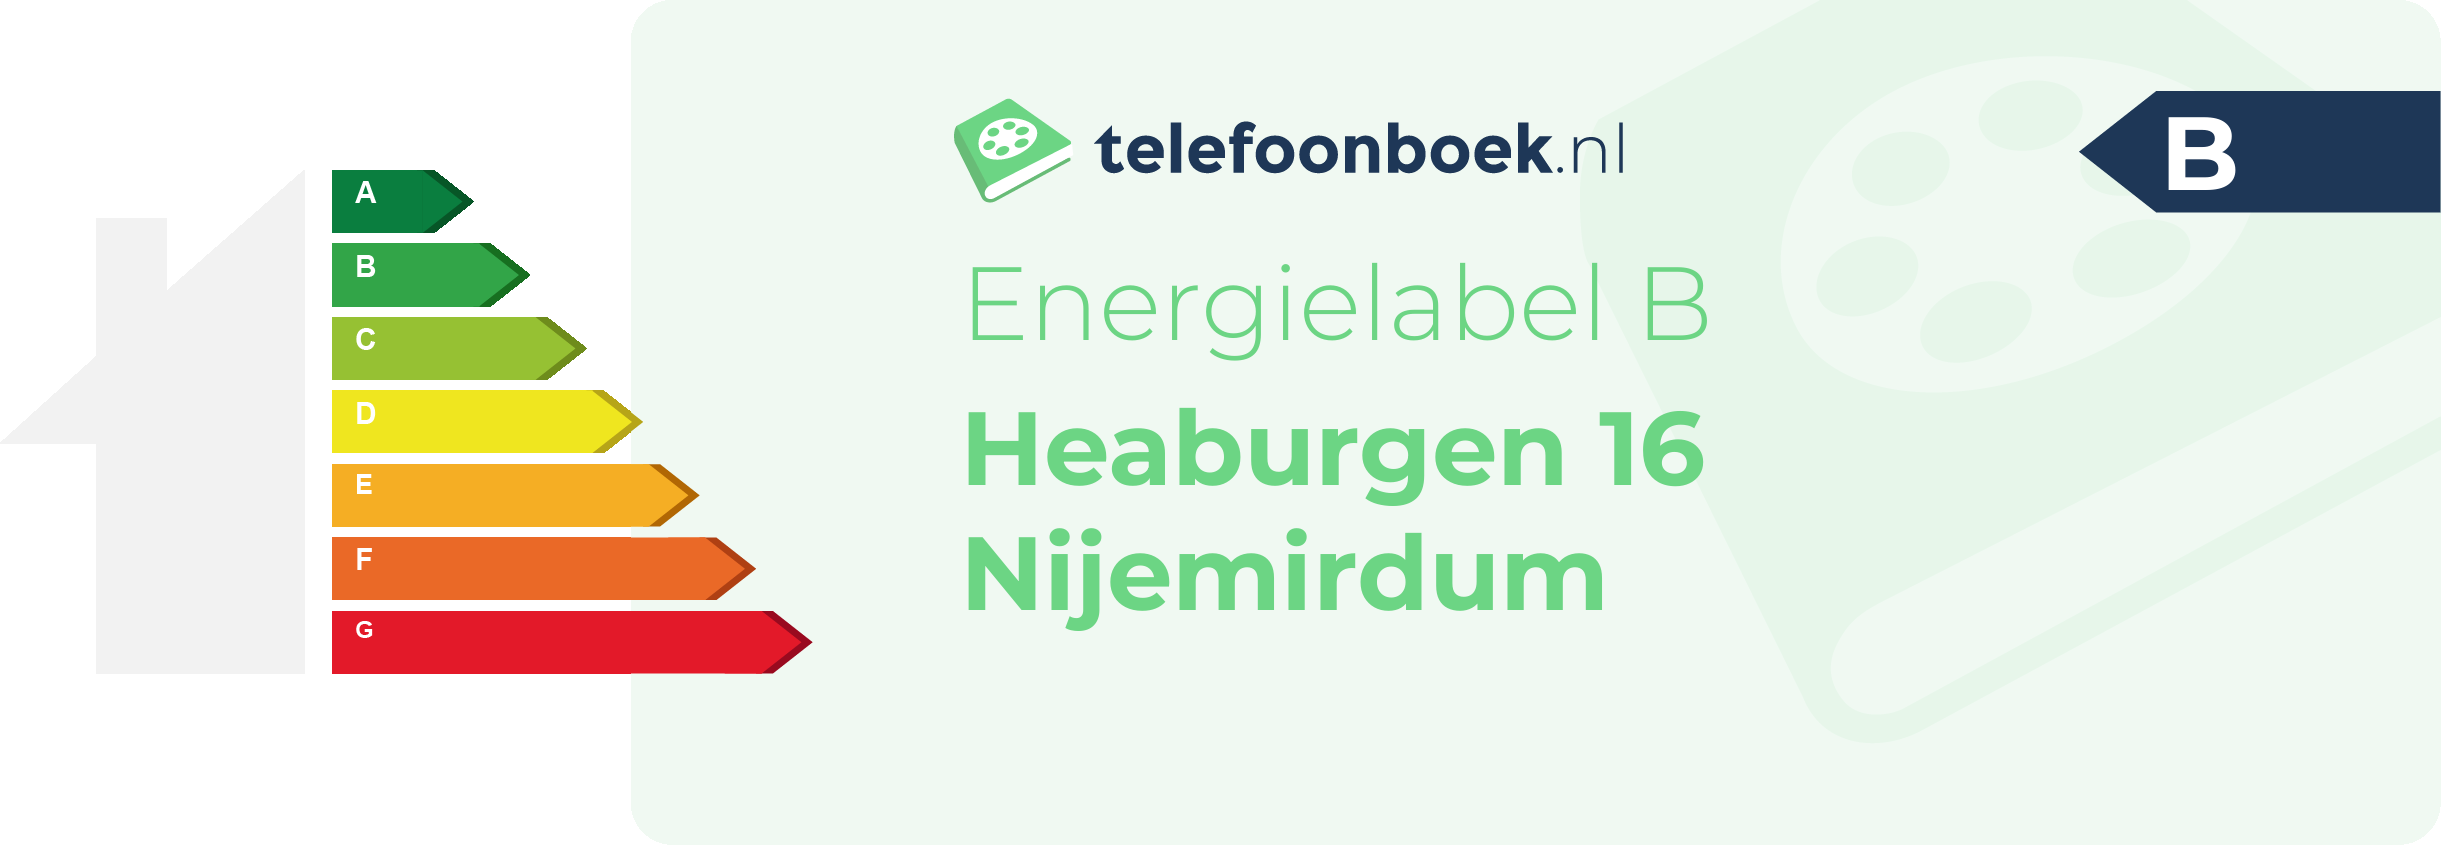 Energielabel Heaburgen 16 Nijemirdum